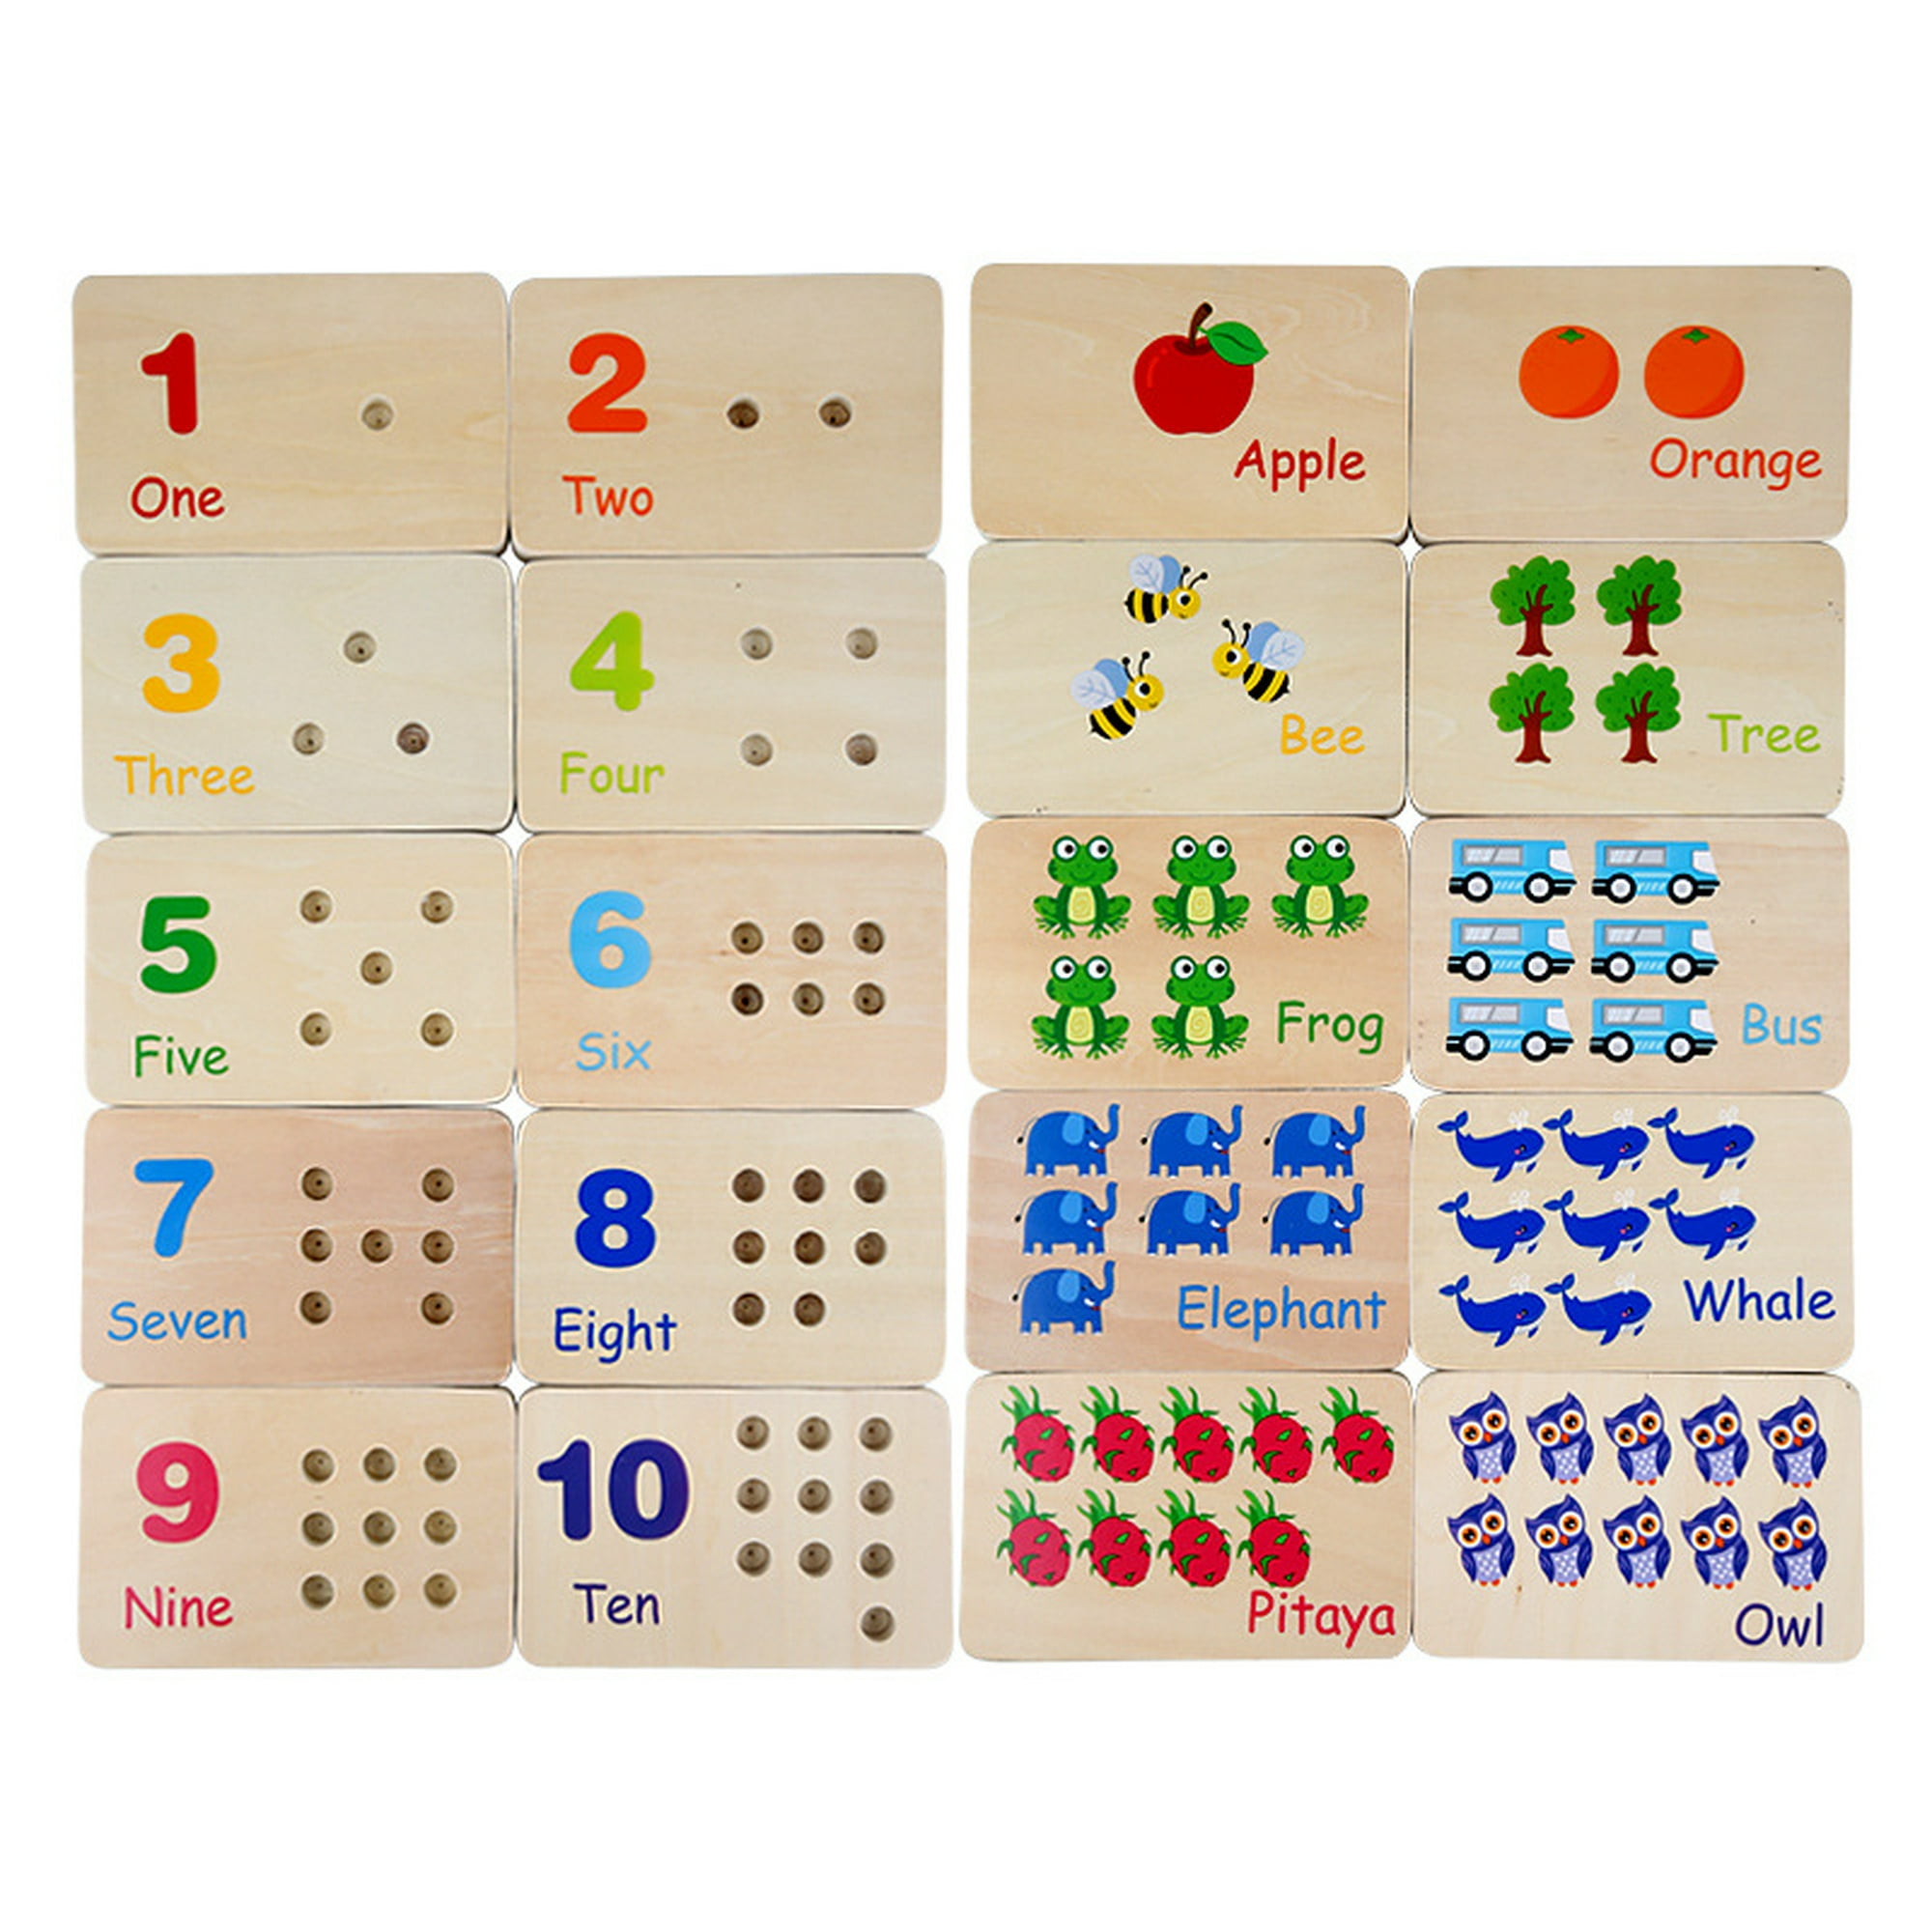 Puzzle 6 en 1 mamá & bebé - Material escolar, oficina y nuevas tecnologias